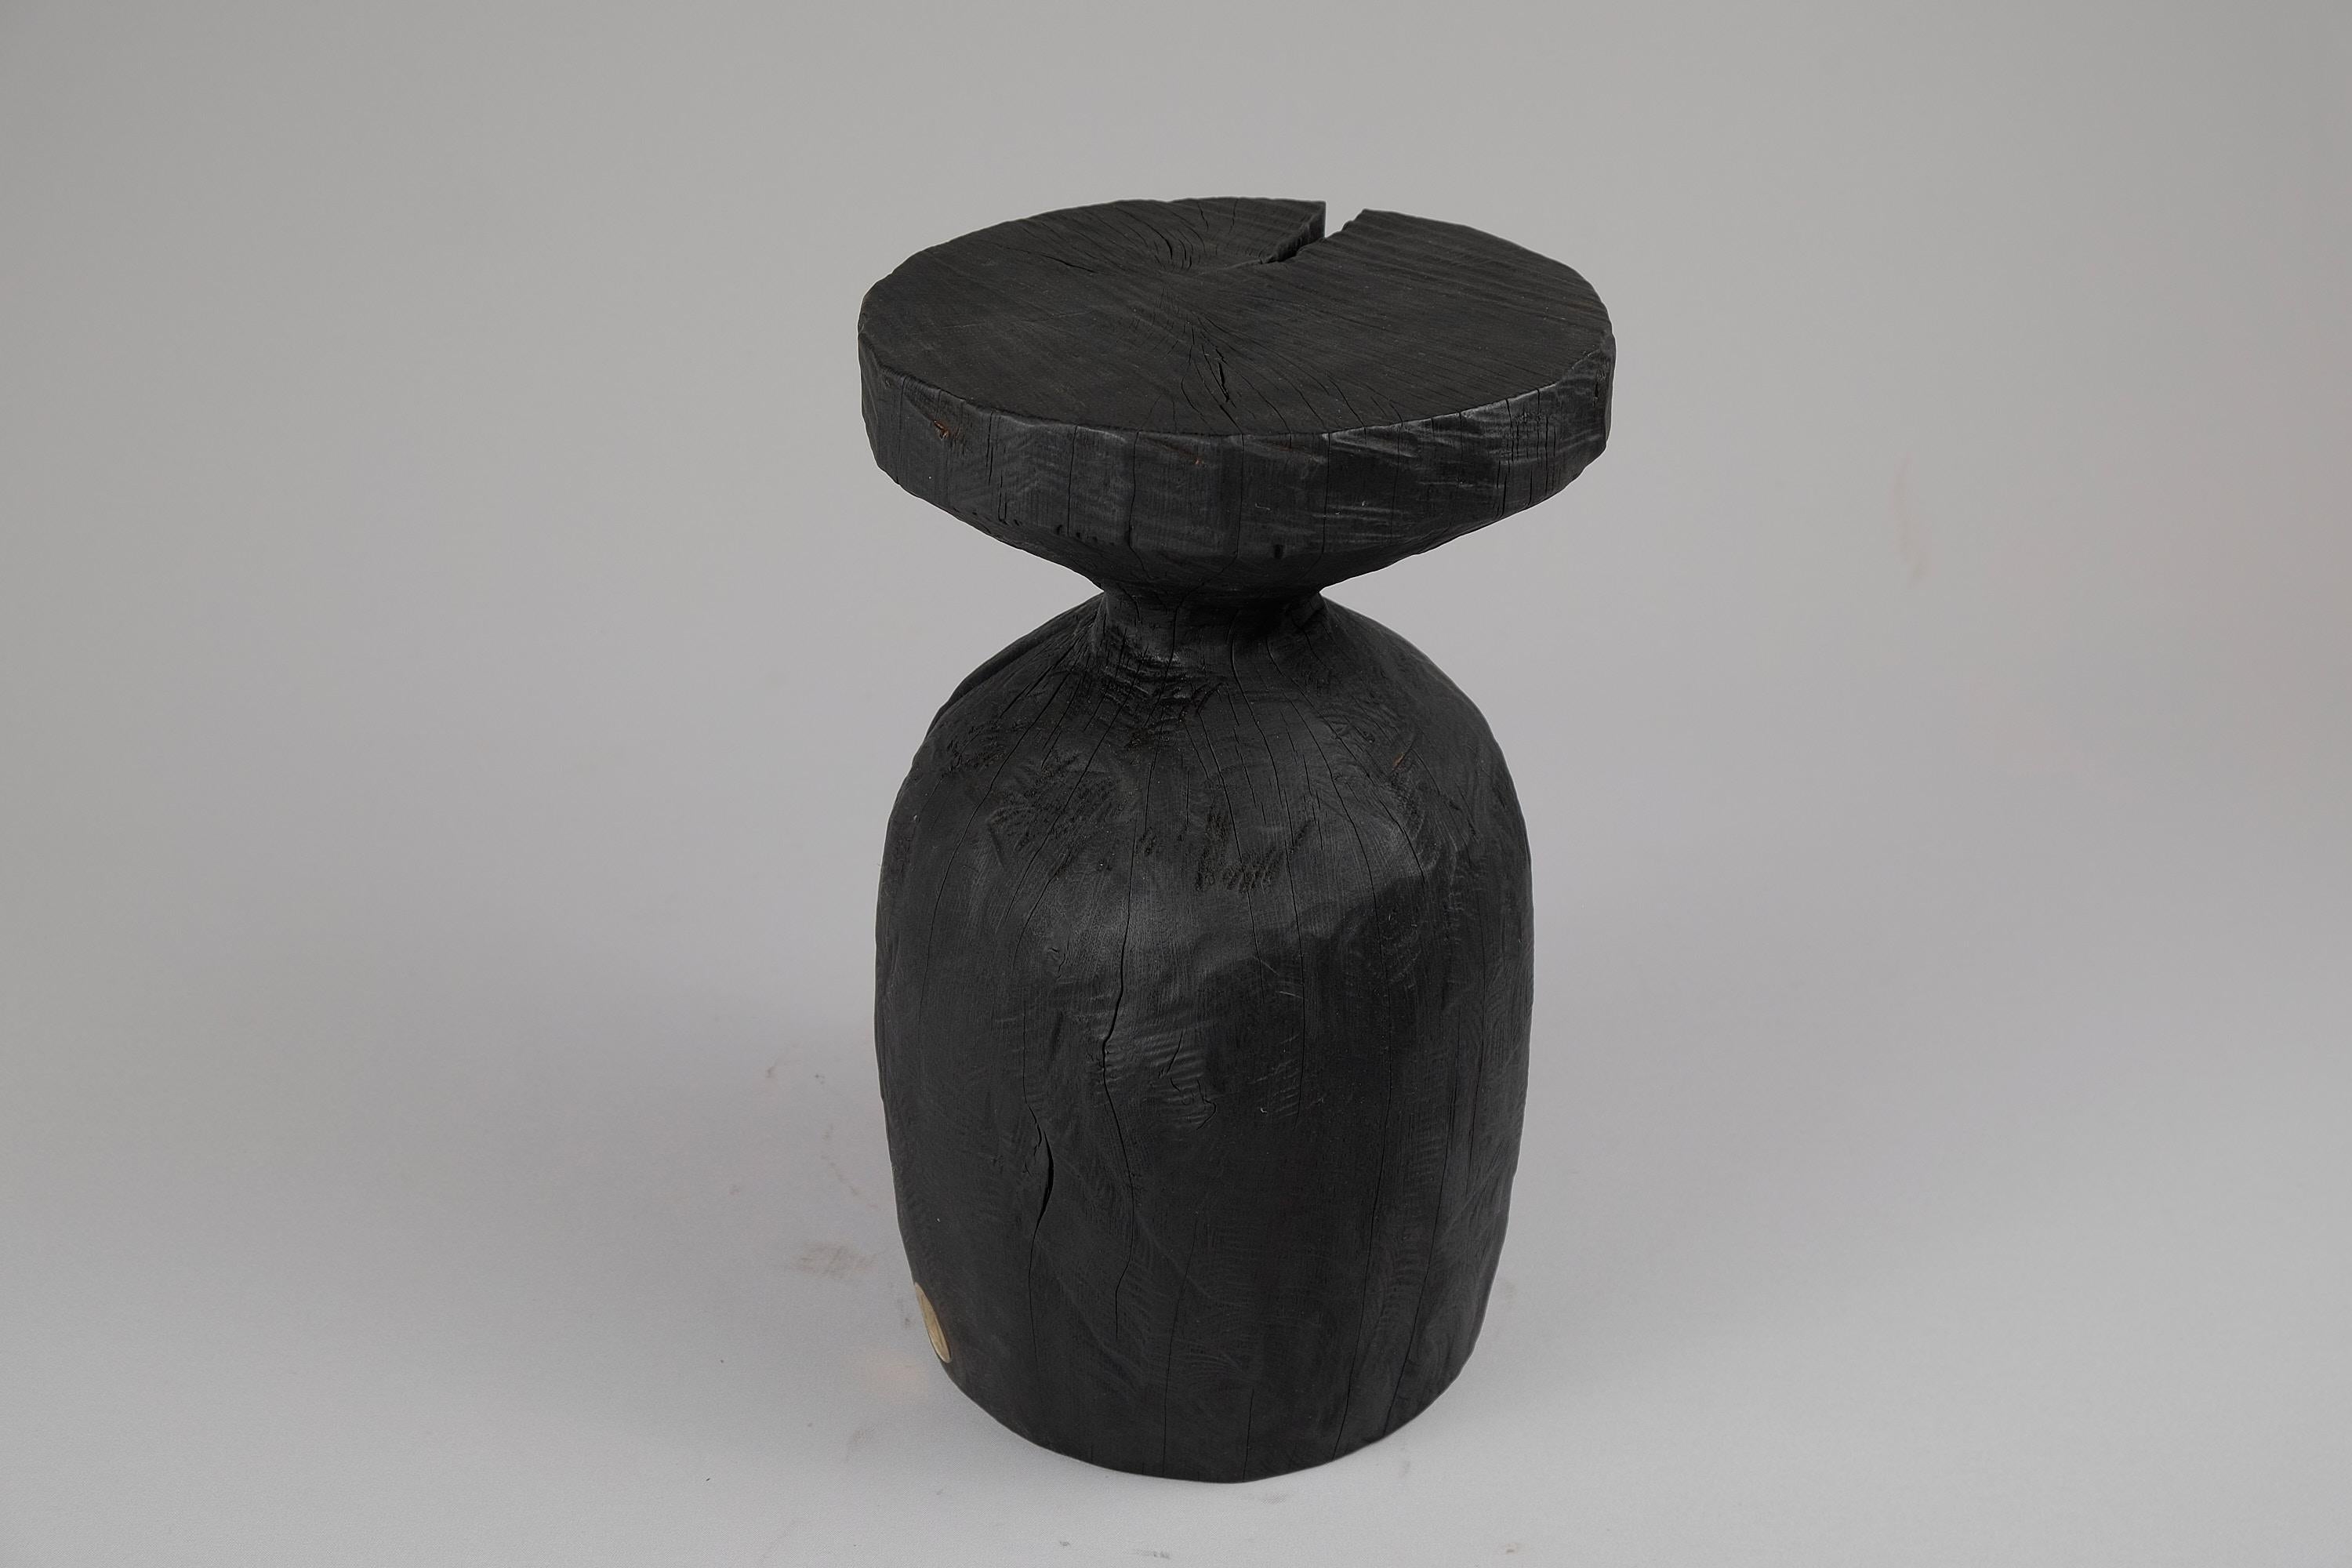 Tabouret/table d'appoint unique en bois sculpté à la tronçonneuse. Sculpté dans une seule pièce de bois et protégé par des huiles de la plus haute qualité, il est durable pour des générations. Un tel design unique fait à la main mettra en valeur